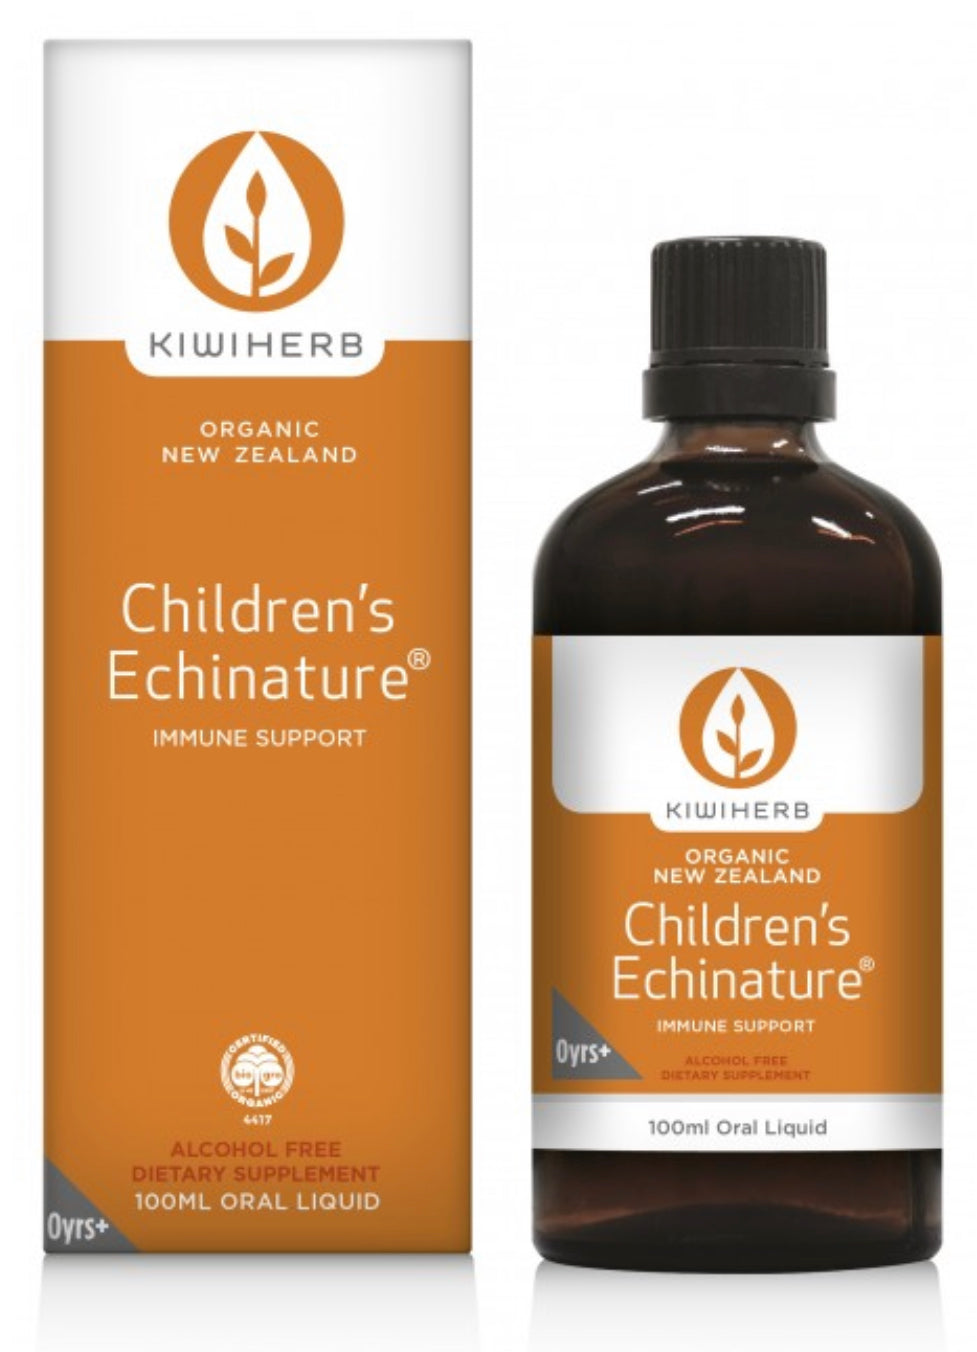 Kiwiherb Children's Echinature Immune Support